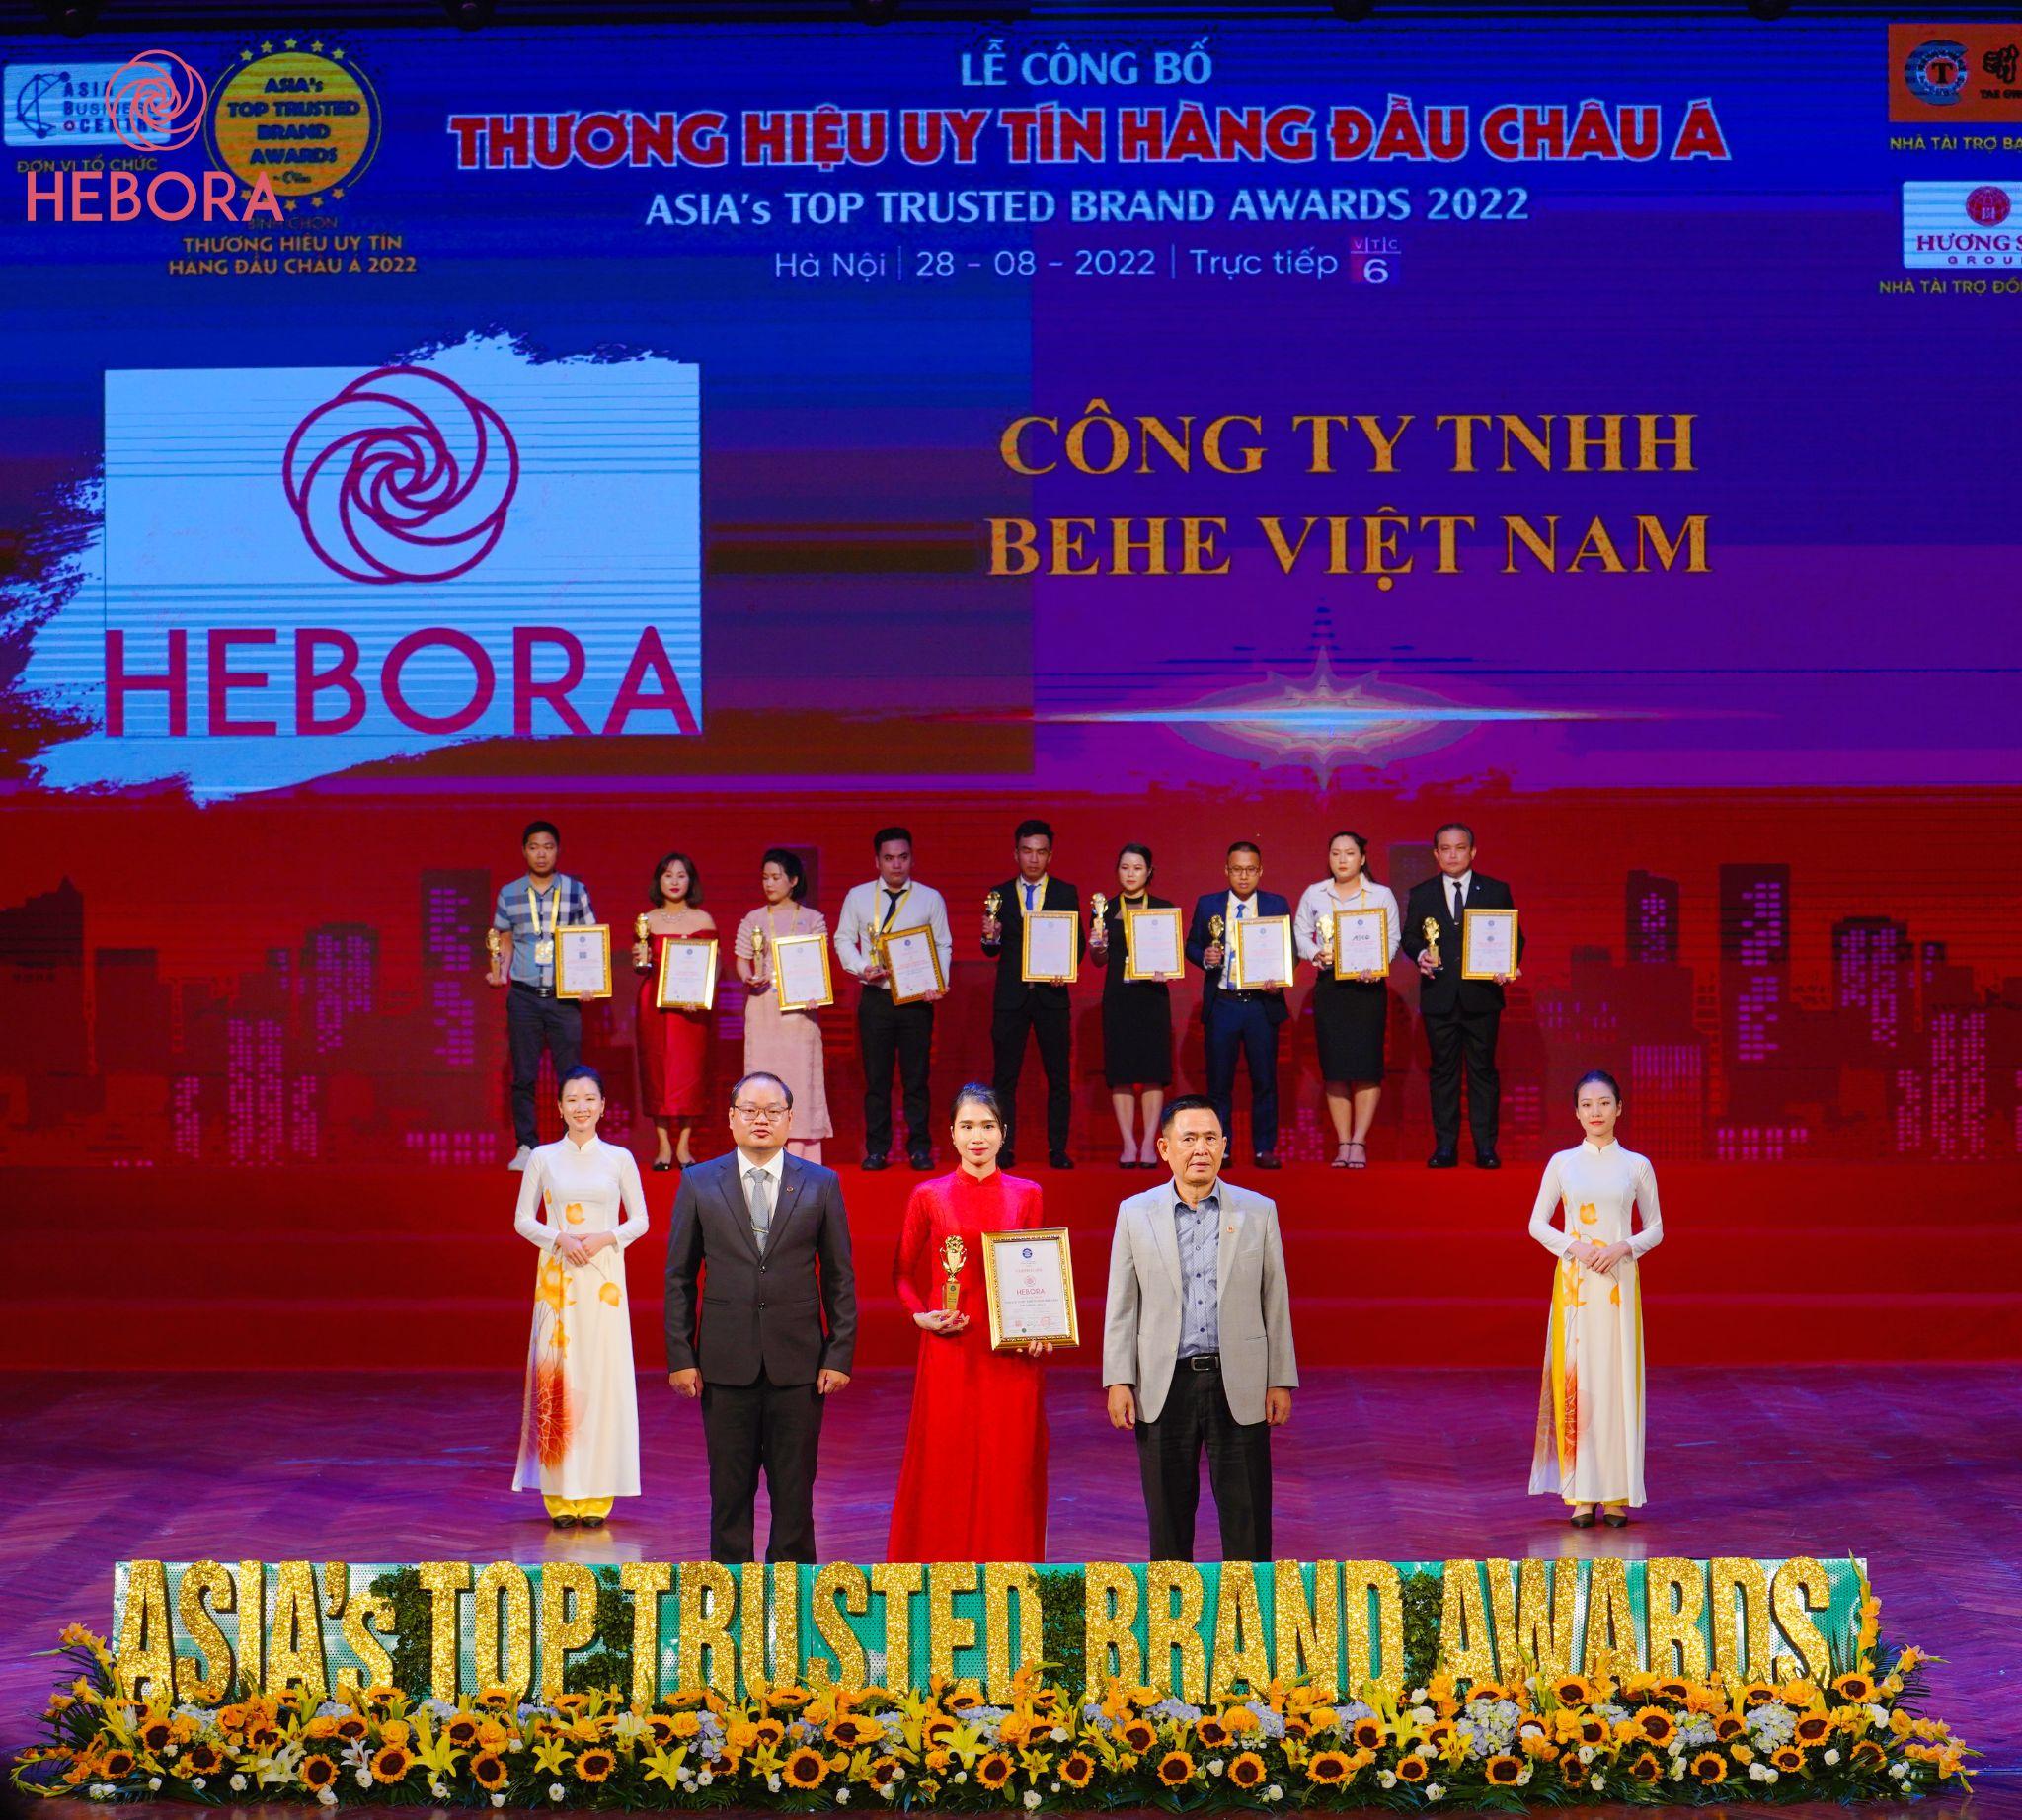 Hebora lọt Top 10 “Thương hiệu uy tín hàng đầu châu Á” tại Asia Awards 2022 - 2